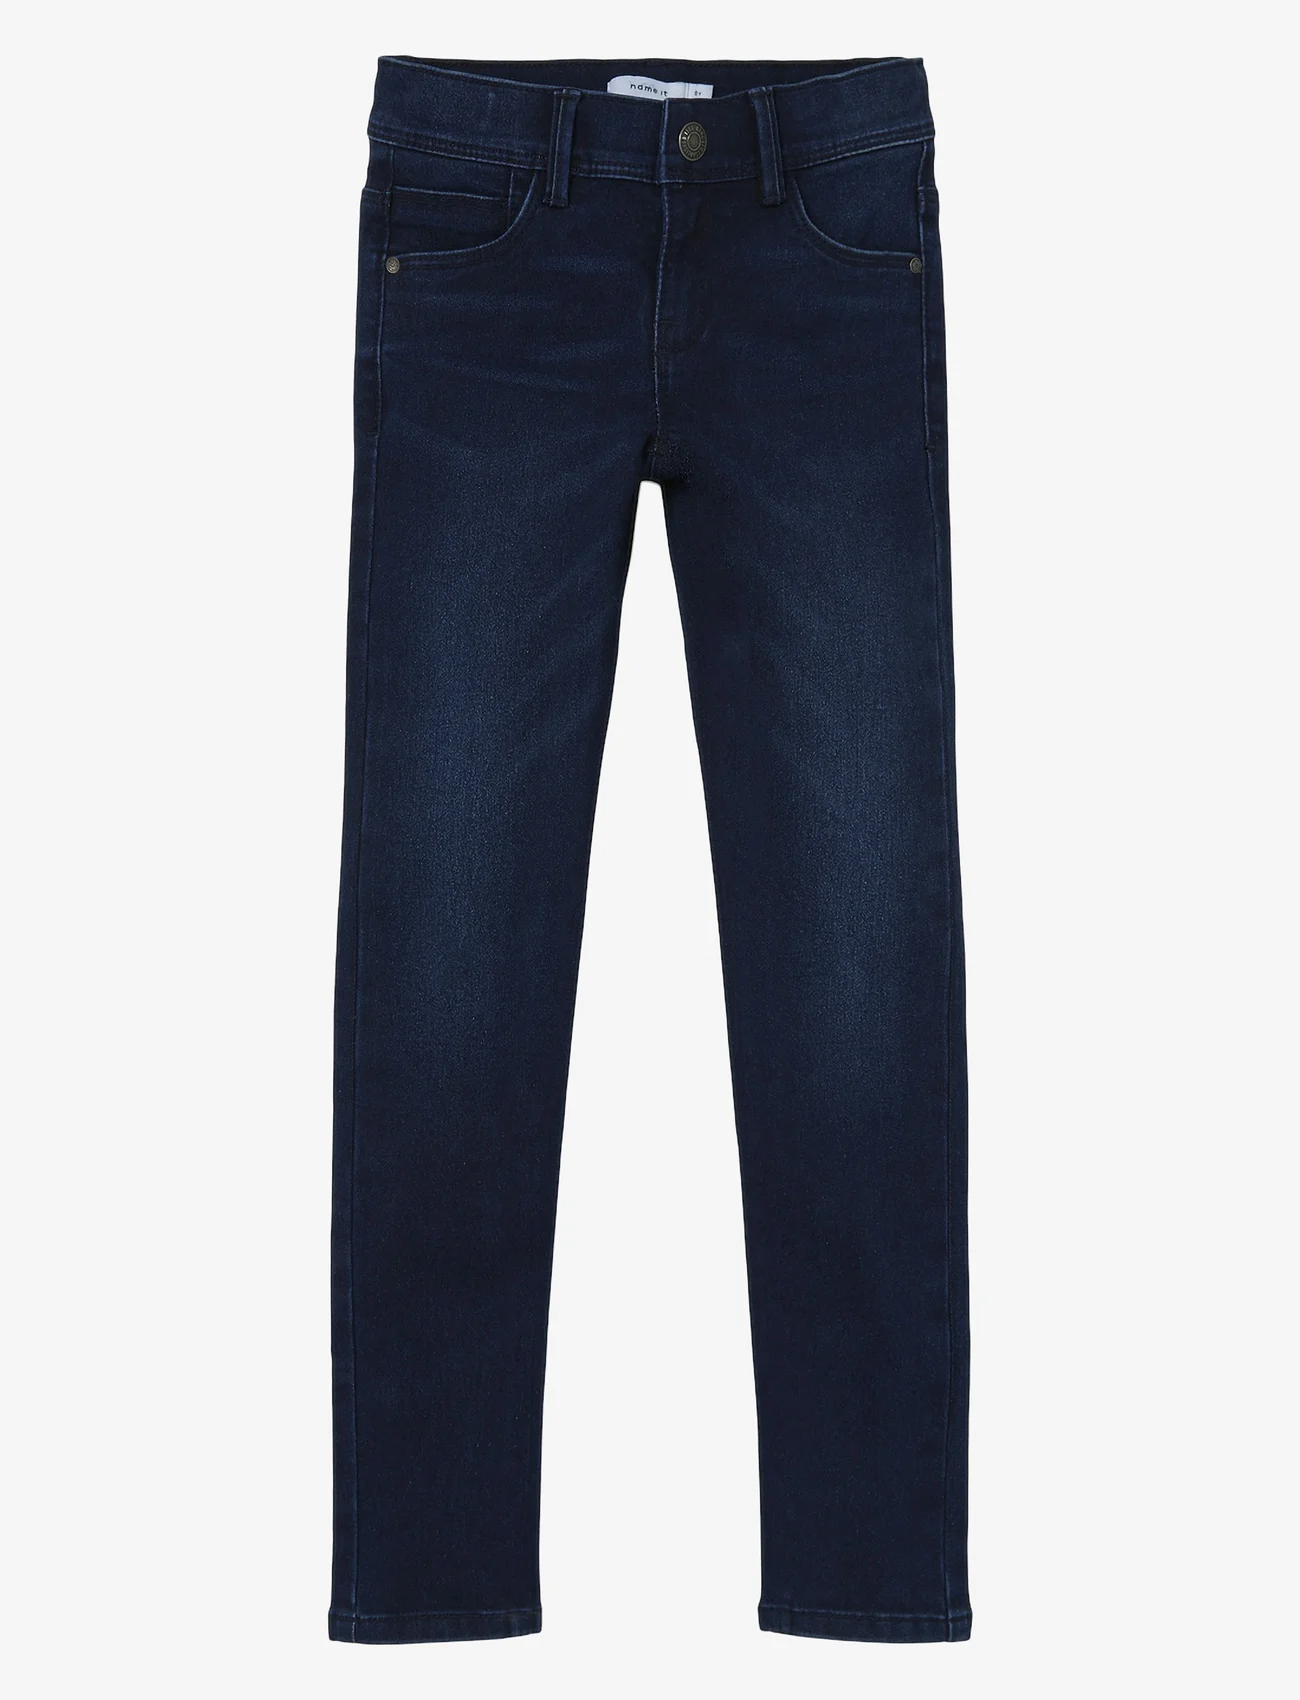 name it - NKFPOLLY SKINNY JEANS 1212-TX NOOS - skinny jeans - dark blue denim - 0